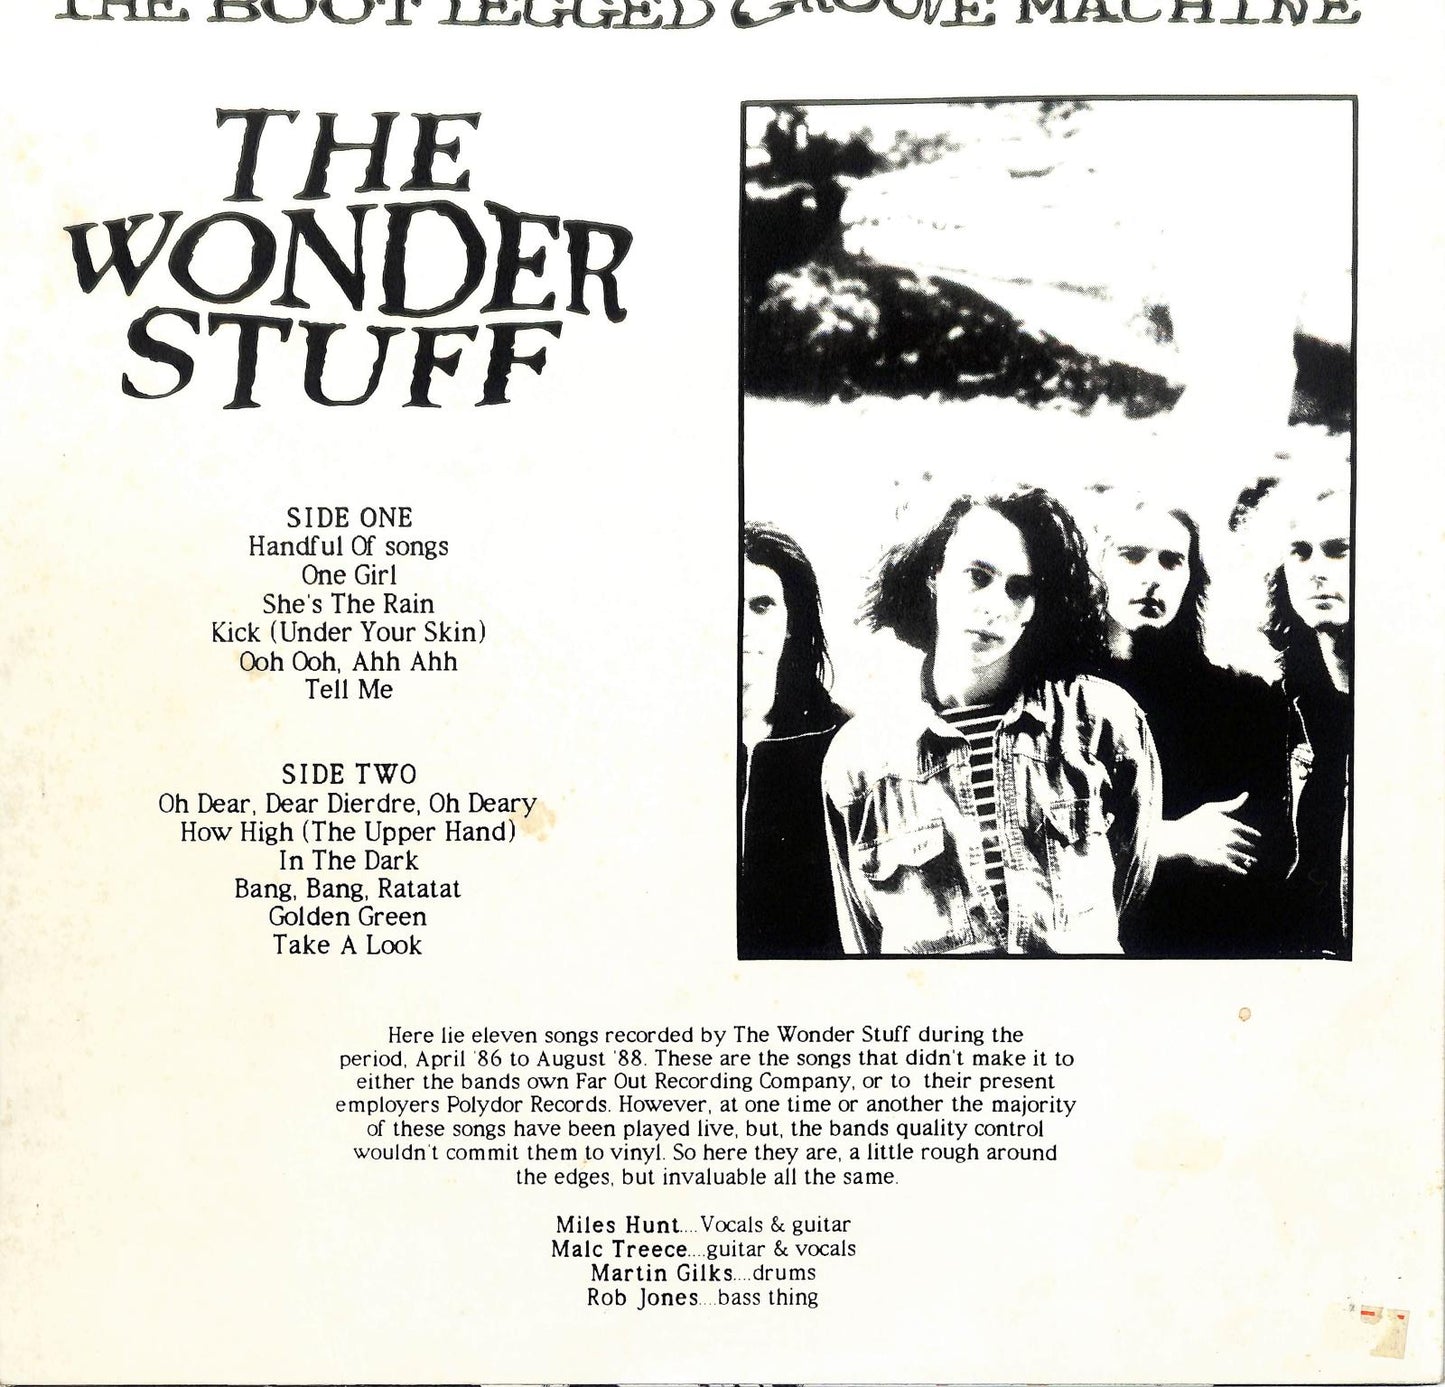 THE WONDER STUFF - The Boot Legged Groove Machine